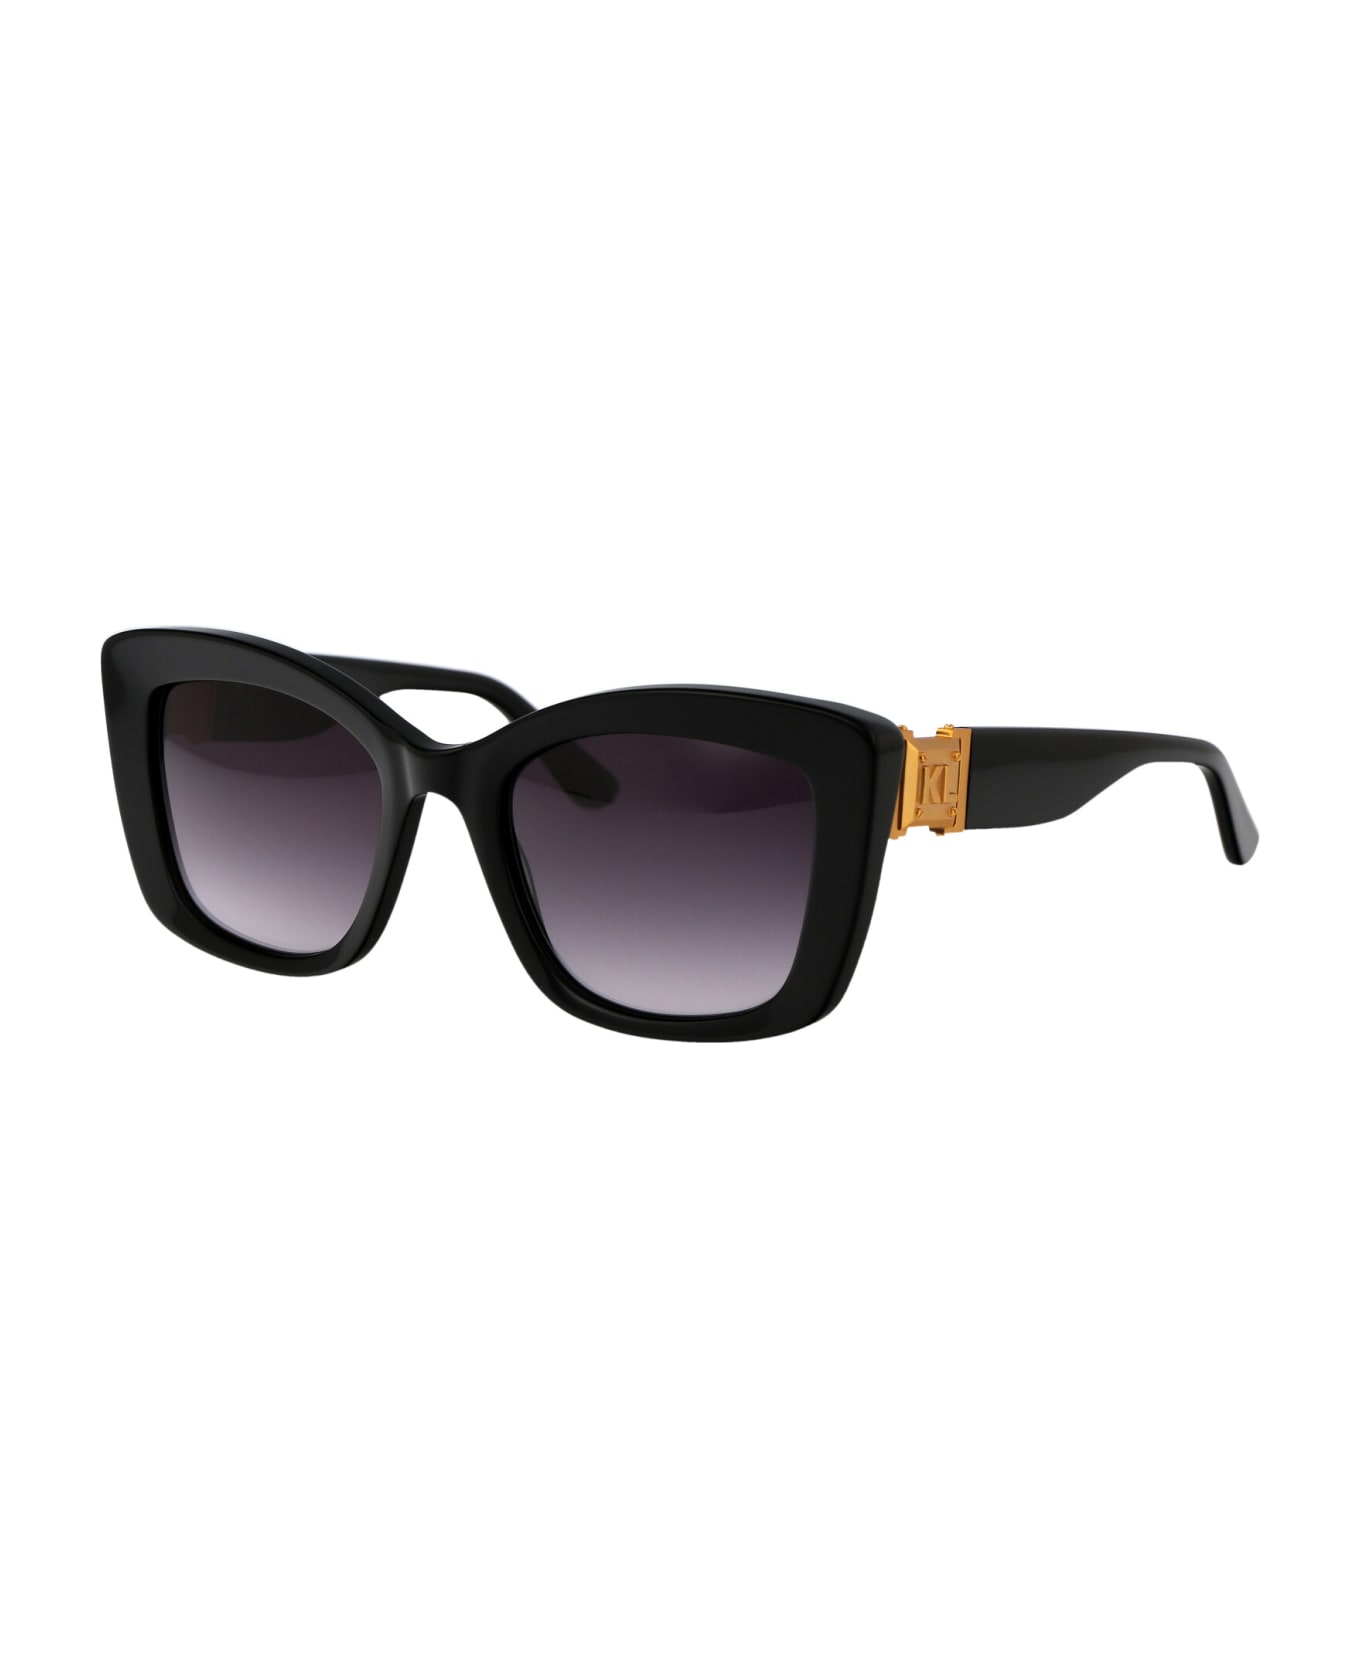 Karl Lagerfeld Kl6139s Sunglasses - 001 BLACK